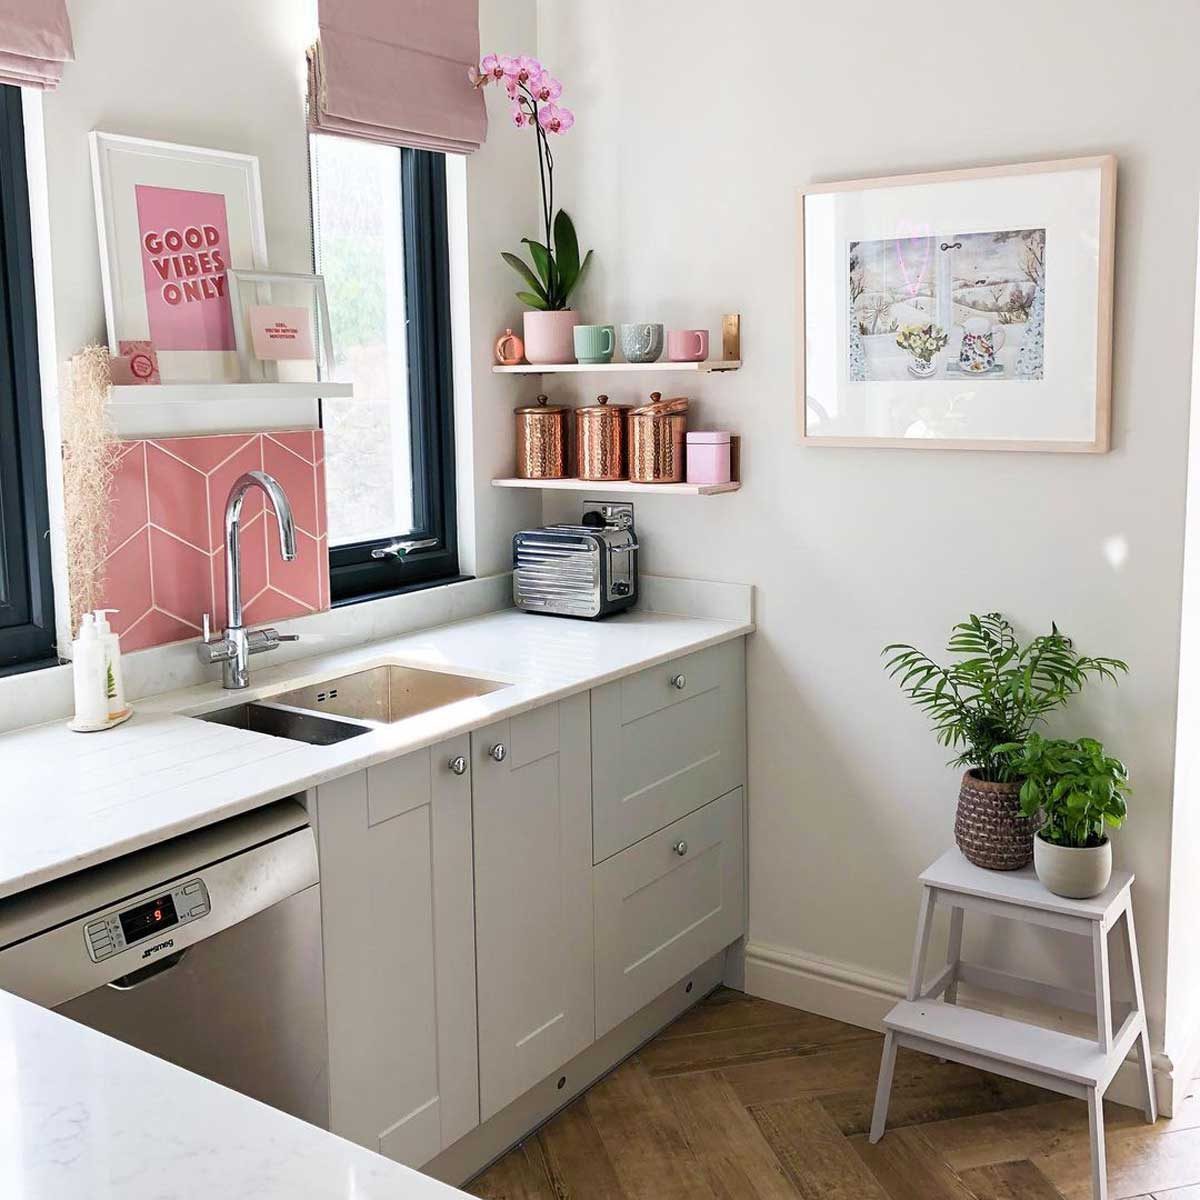 Kitchen with pink artwork